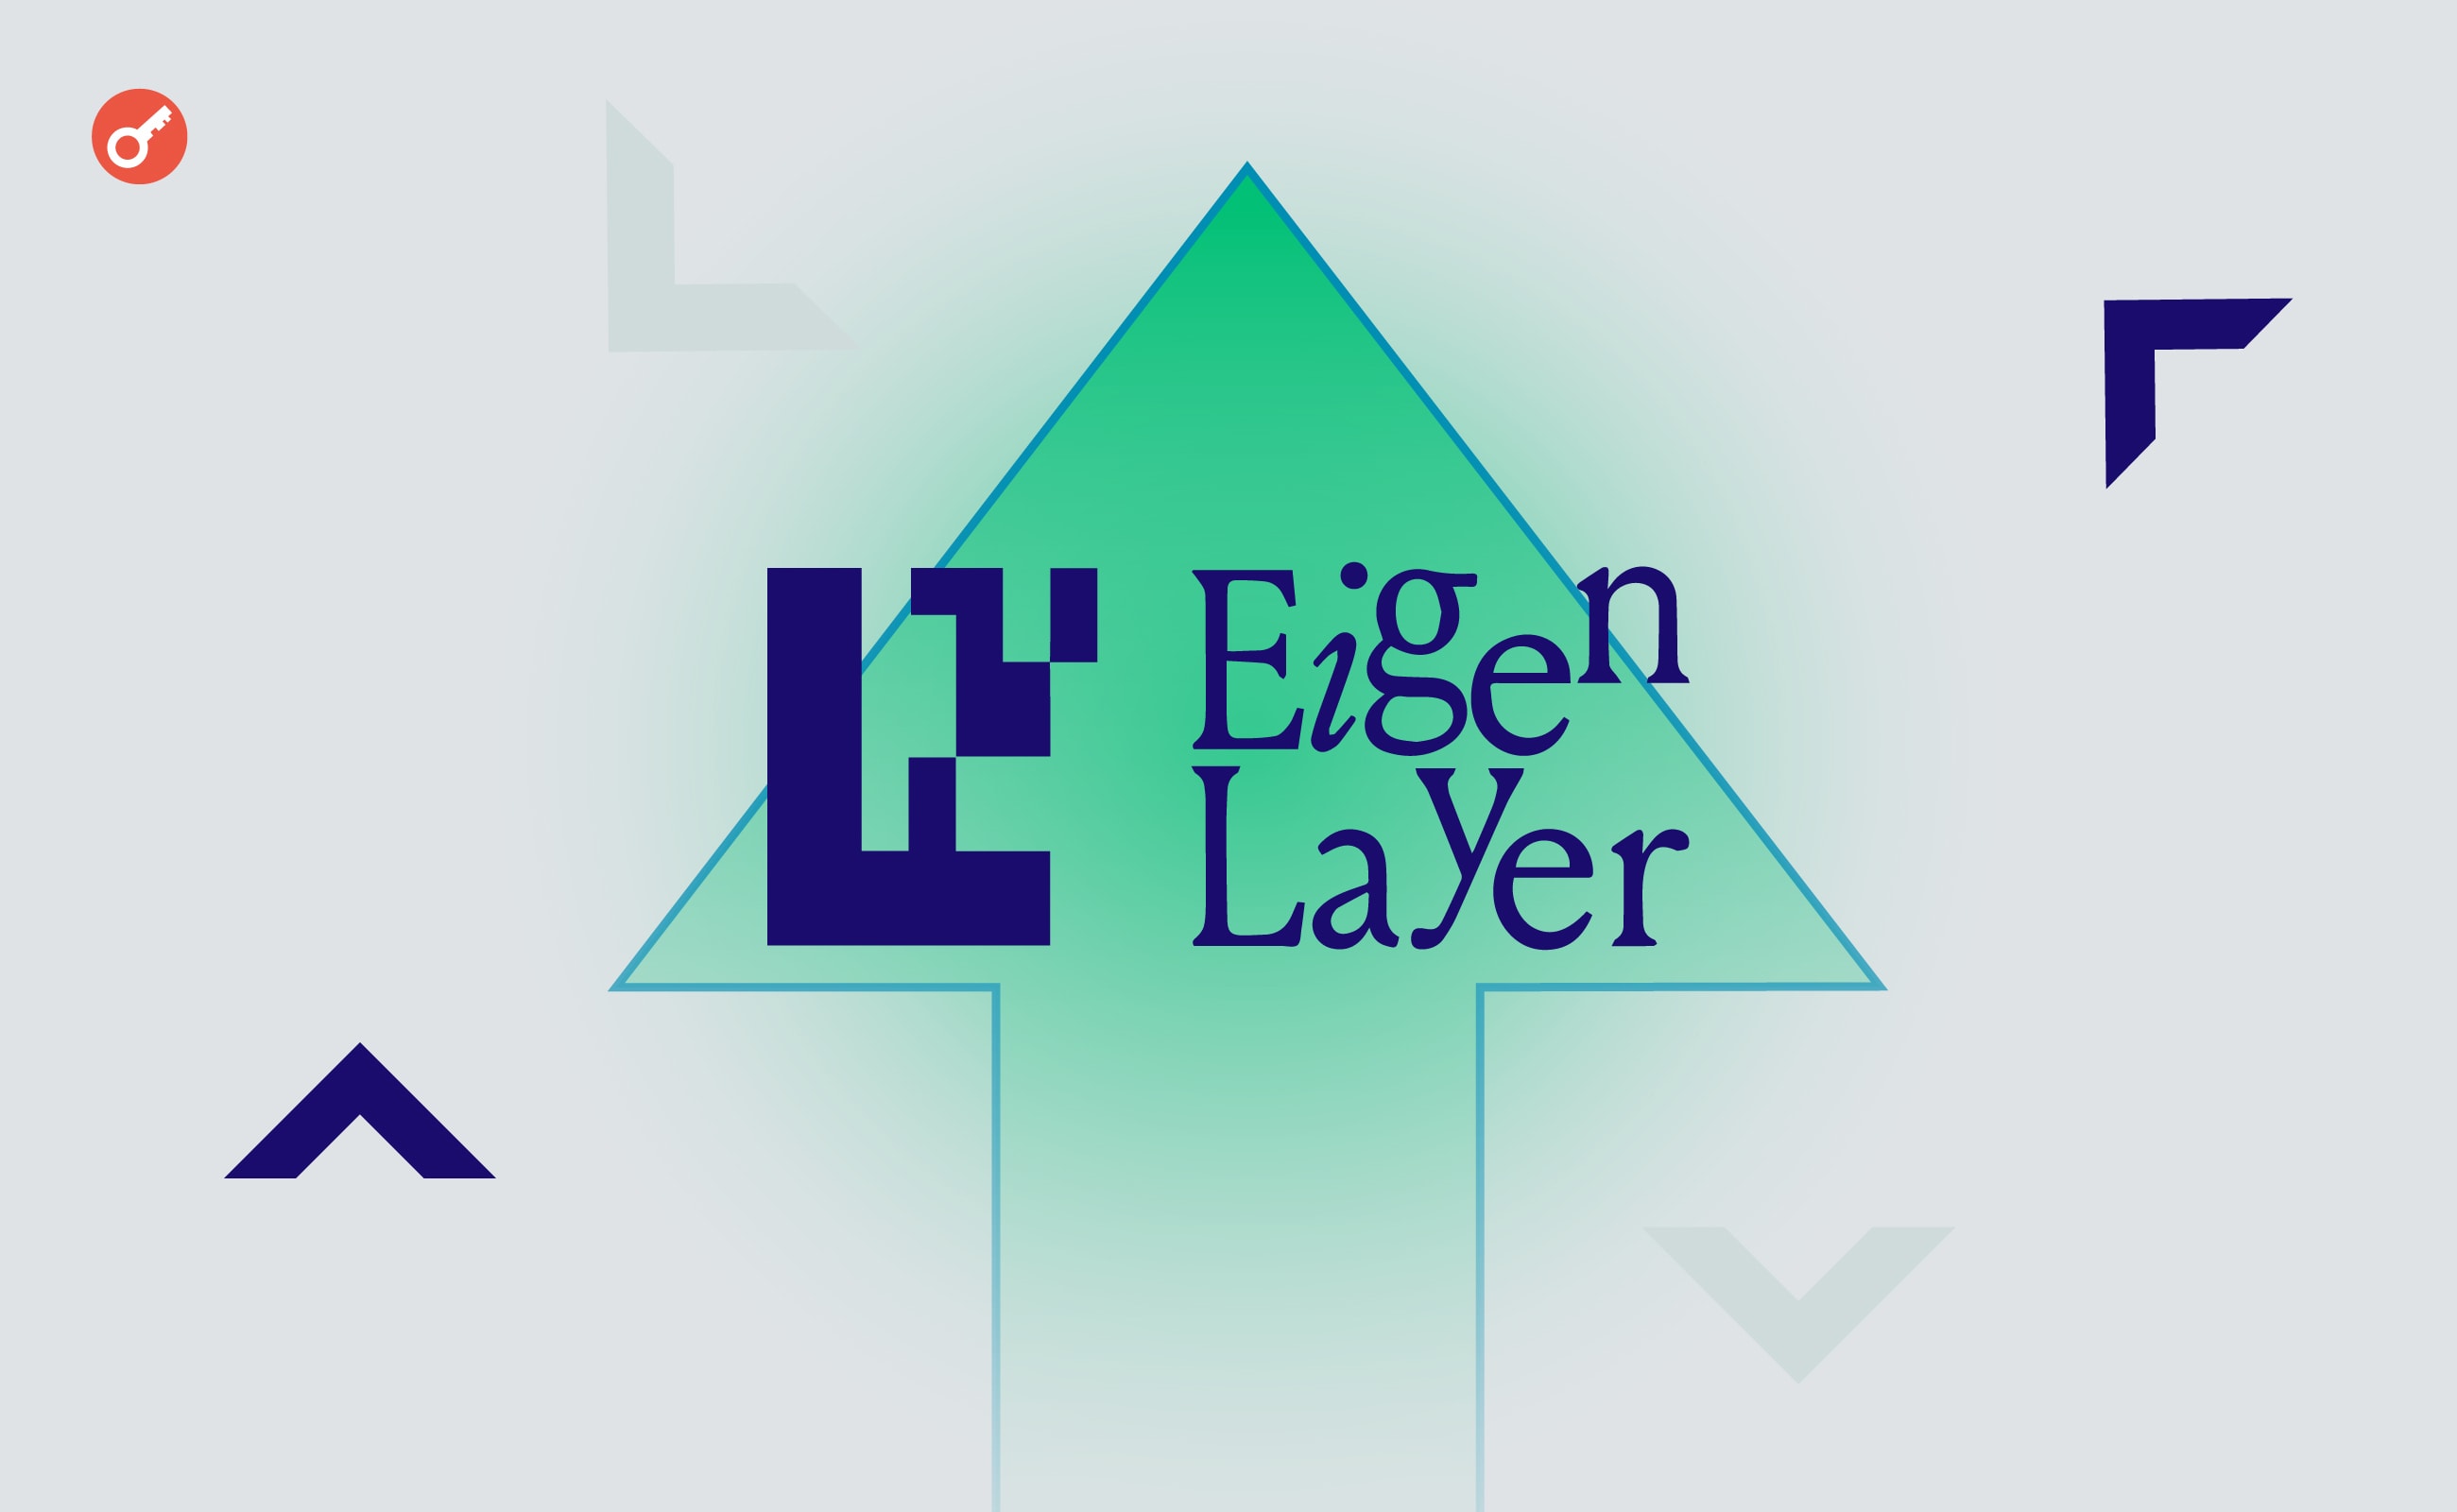 TVL протоколу рестейкінгу EigenLayer перевищив $15,1 млрд. Головний колаж новини.